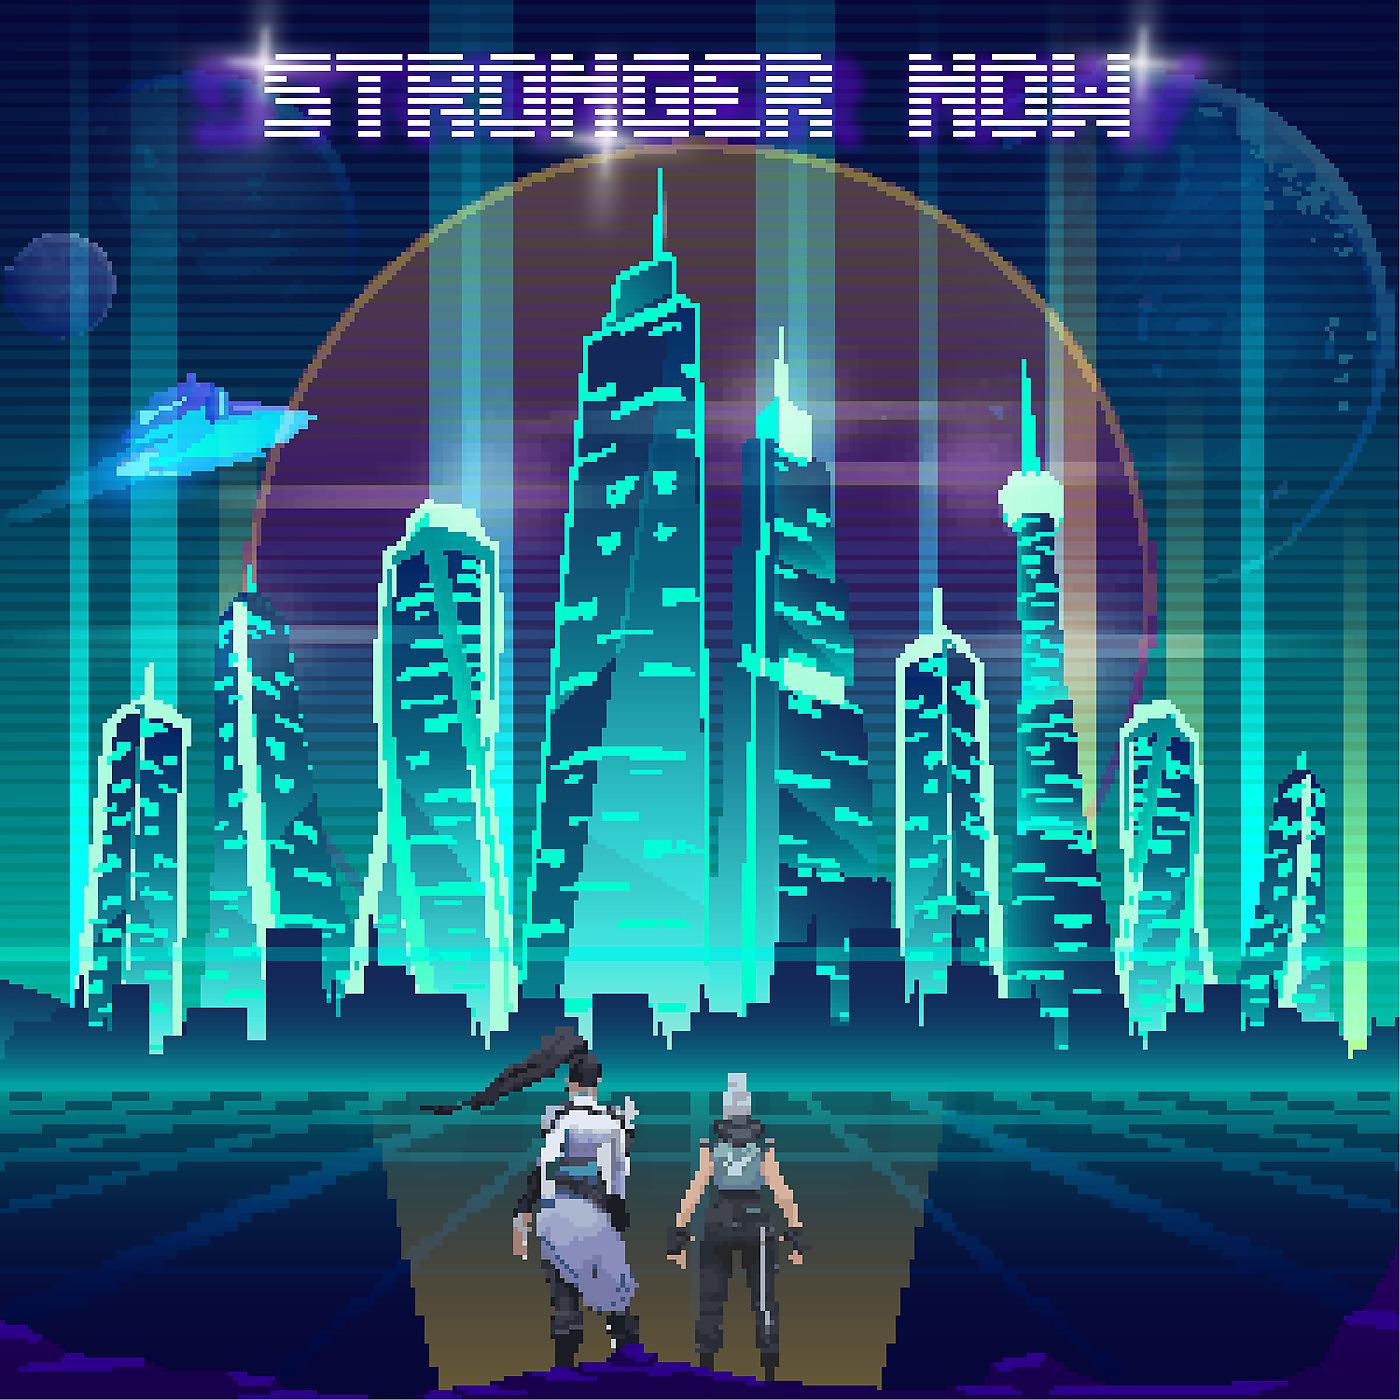 Постер альбома Stronger Now